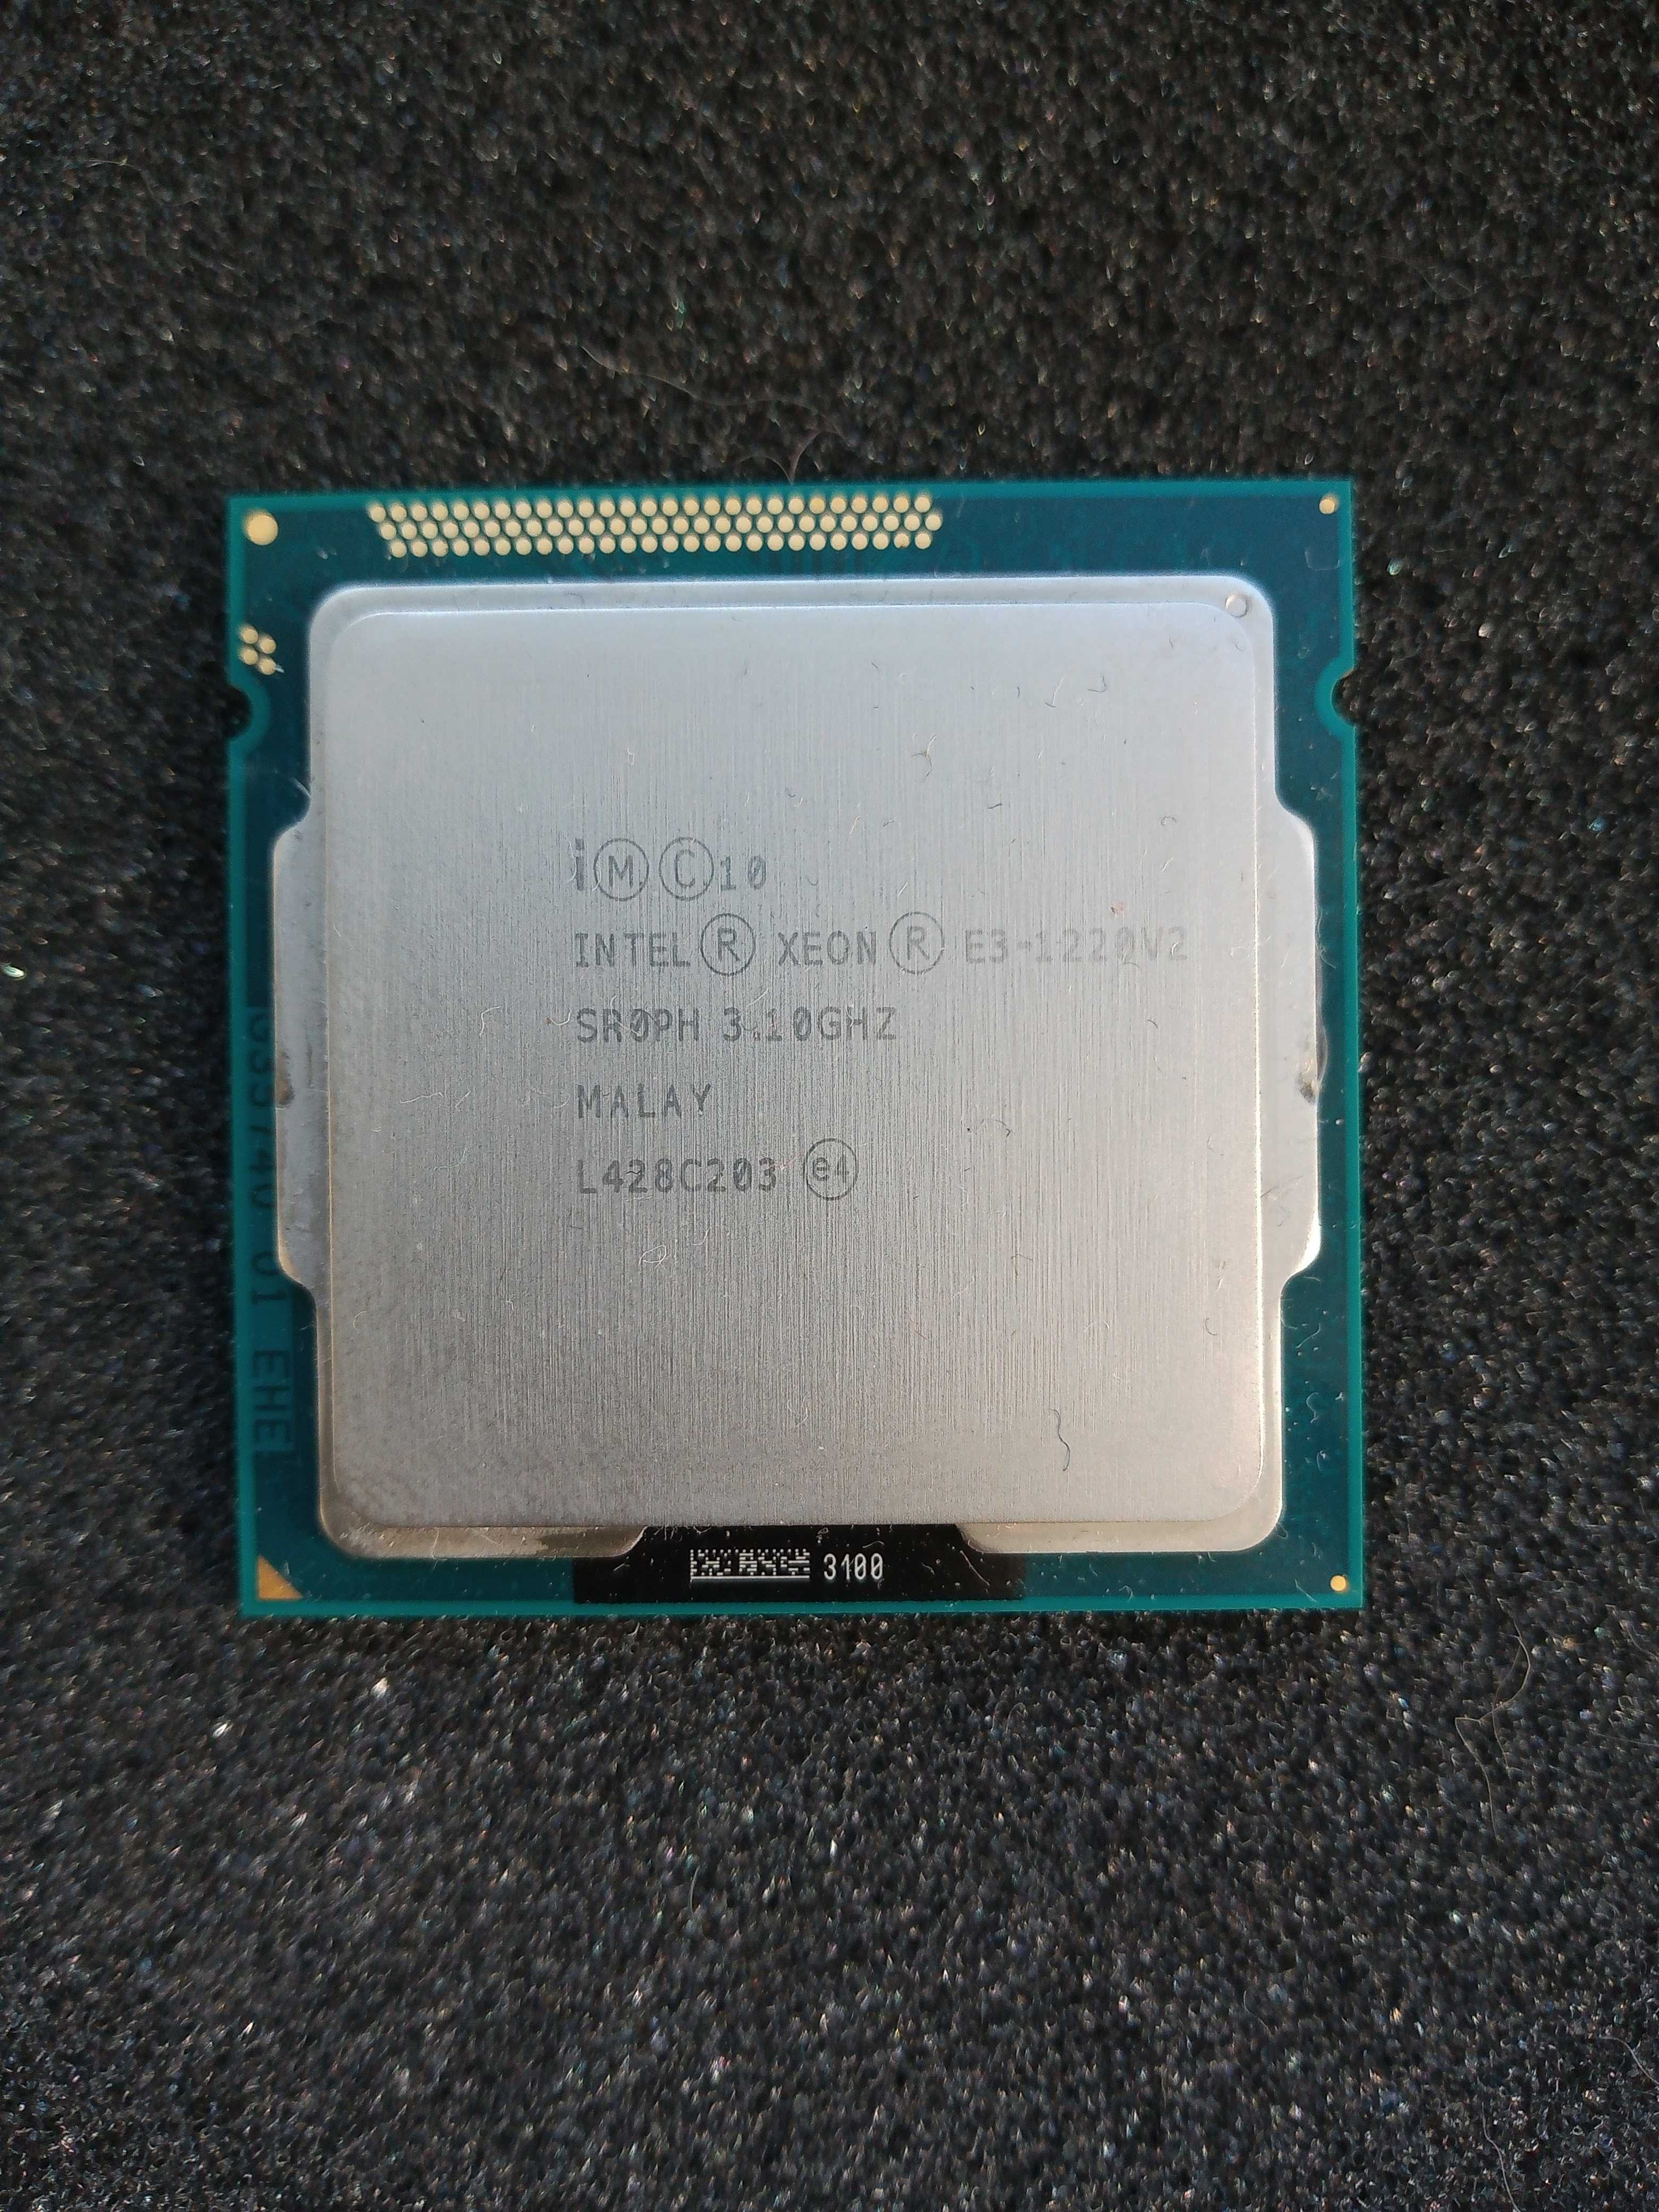 Продам Intel Xeon E3-1220 v2  SR0PH 4-ядра 3.1GHz/8M/69W Socket 1155